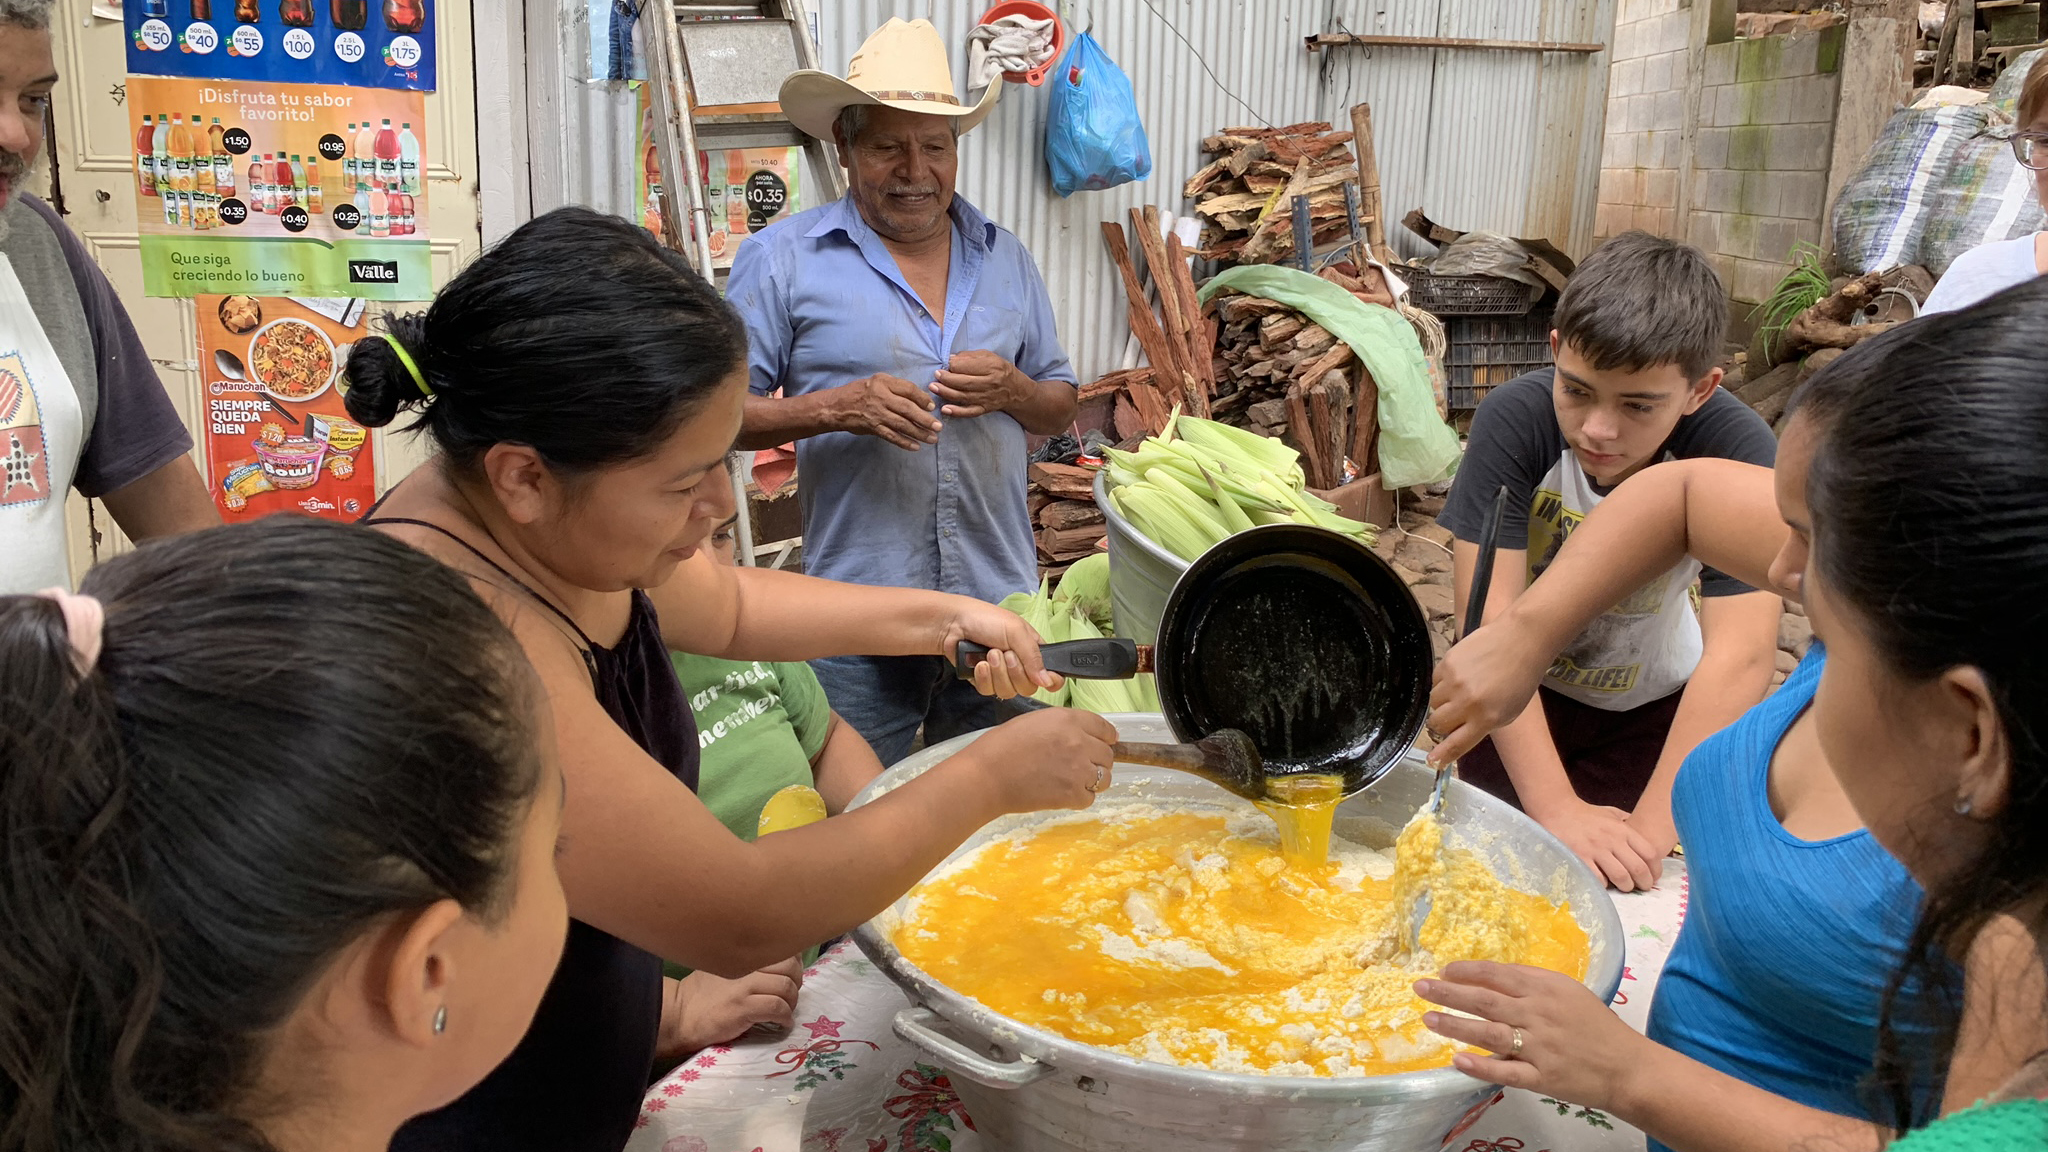 In El Salvador, corn harvest brings together families split by migration